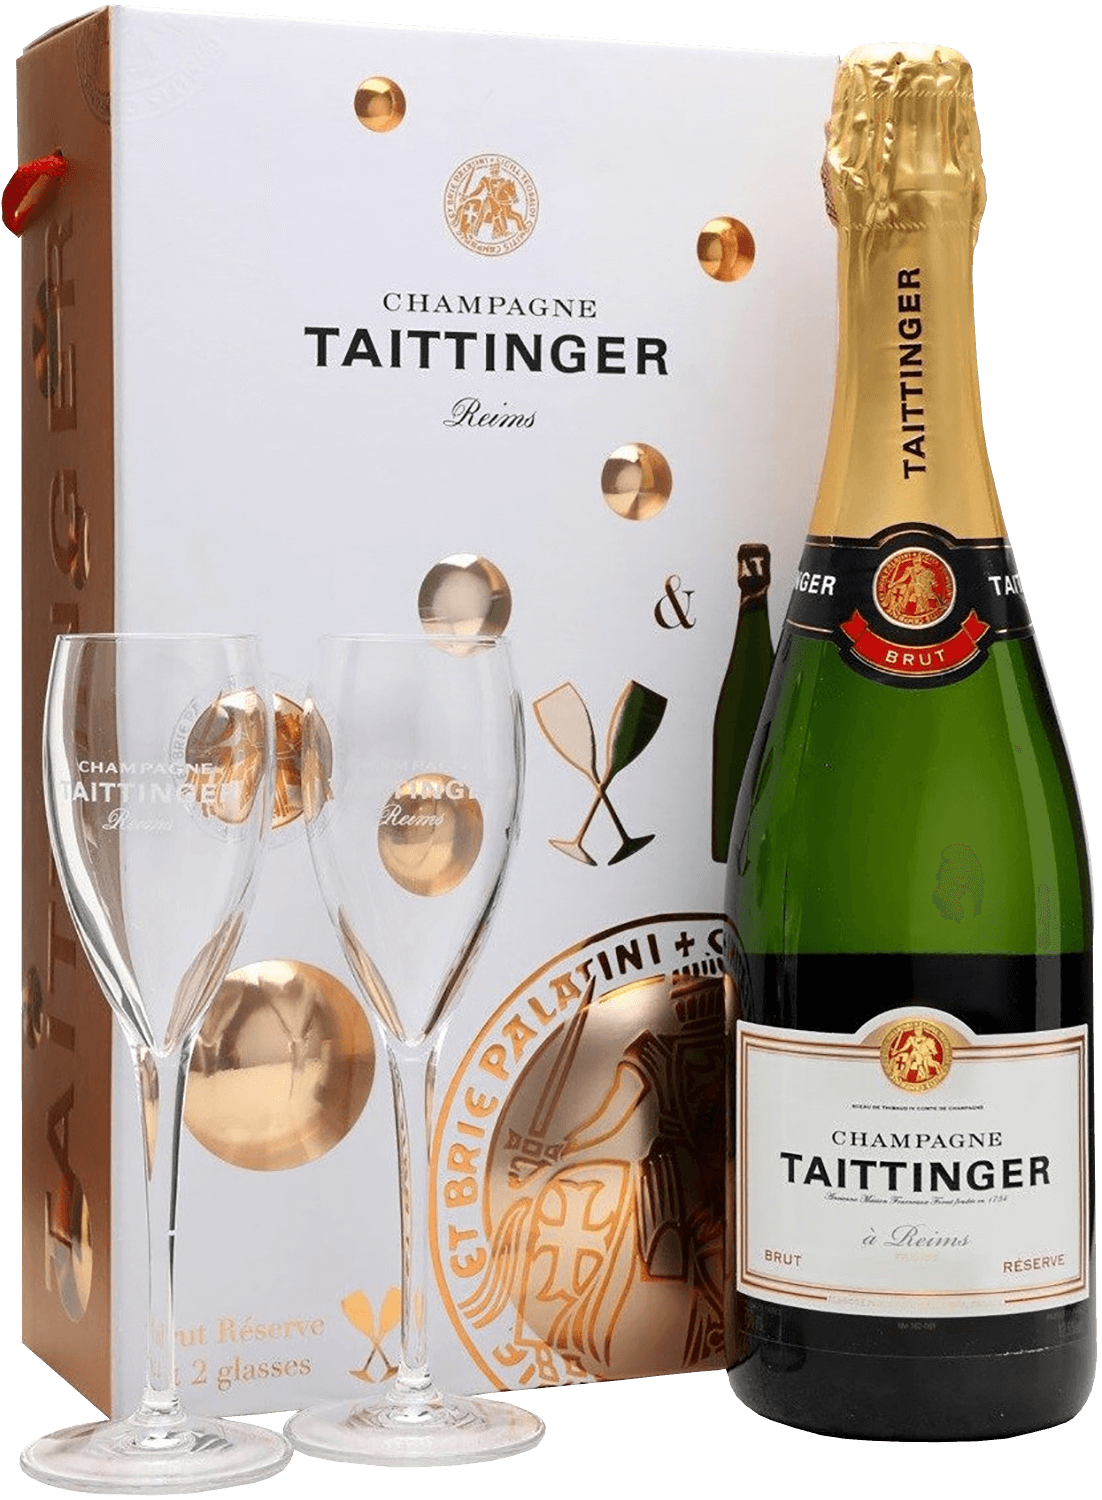 Taittinger Brut Reserve Champagne AOC (gift box) g h mumm grand cordon champagne aoc brut gift box